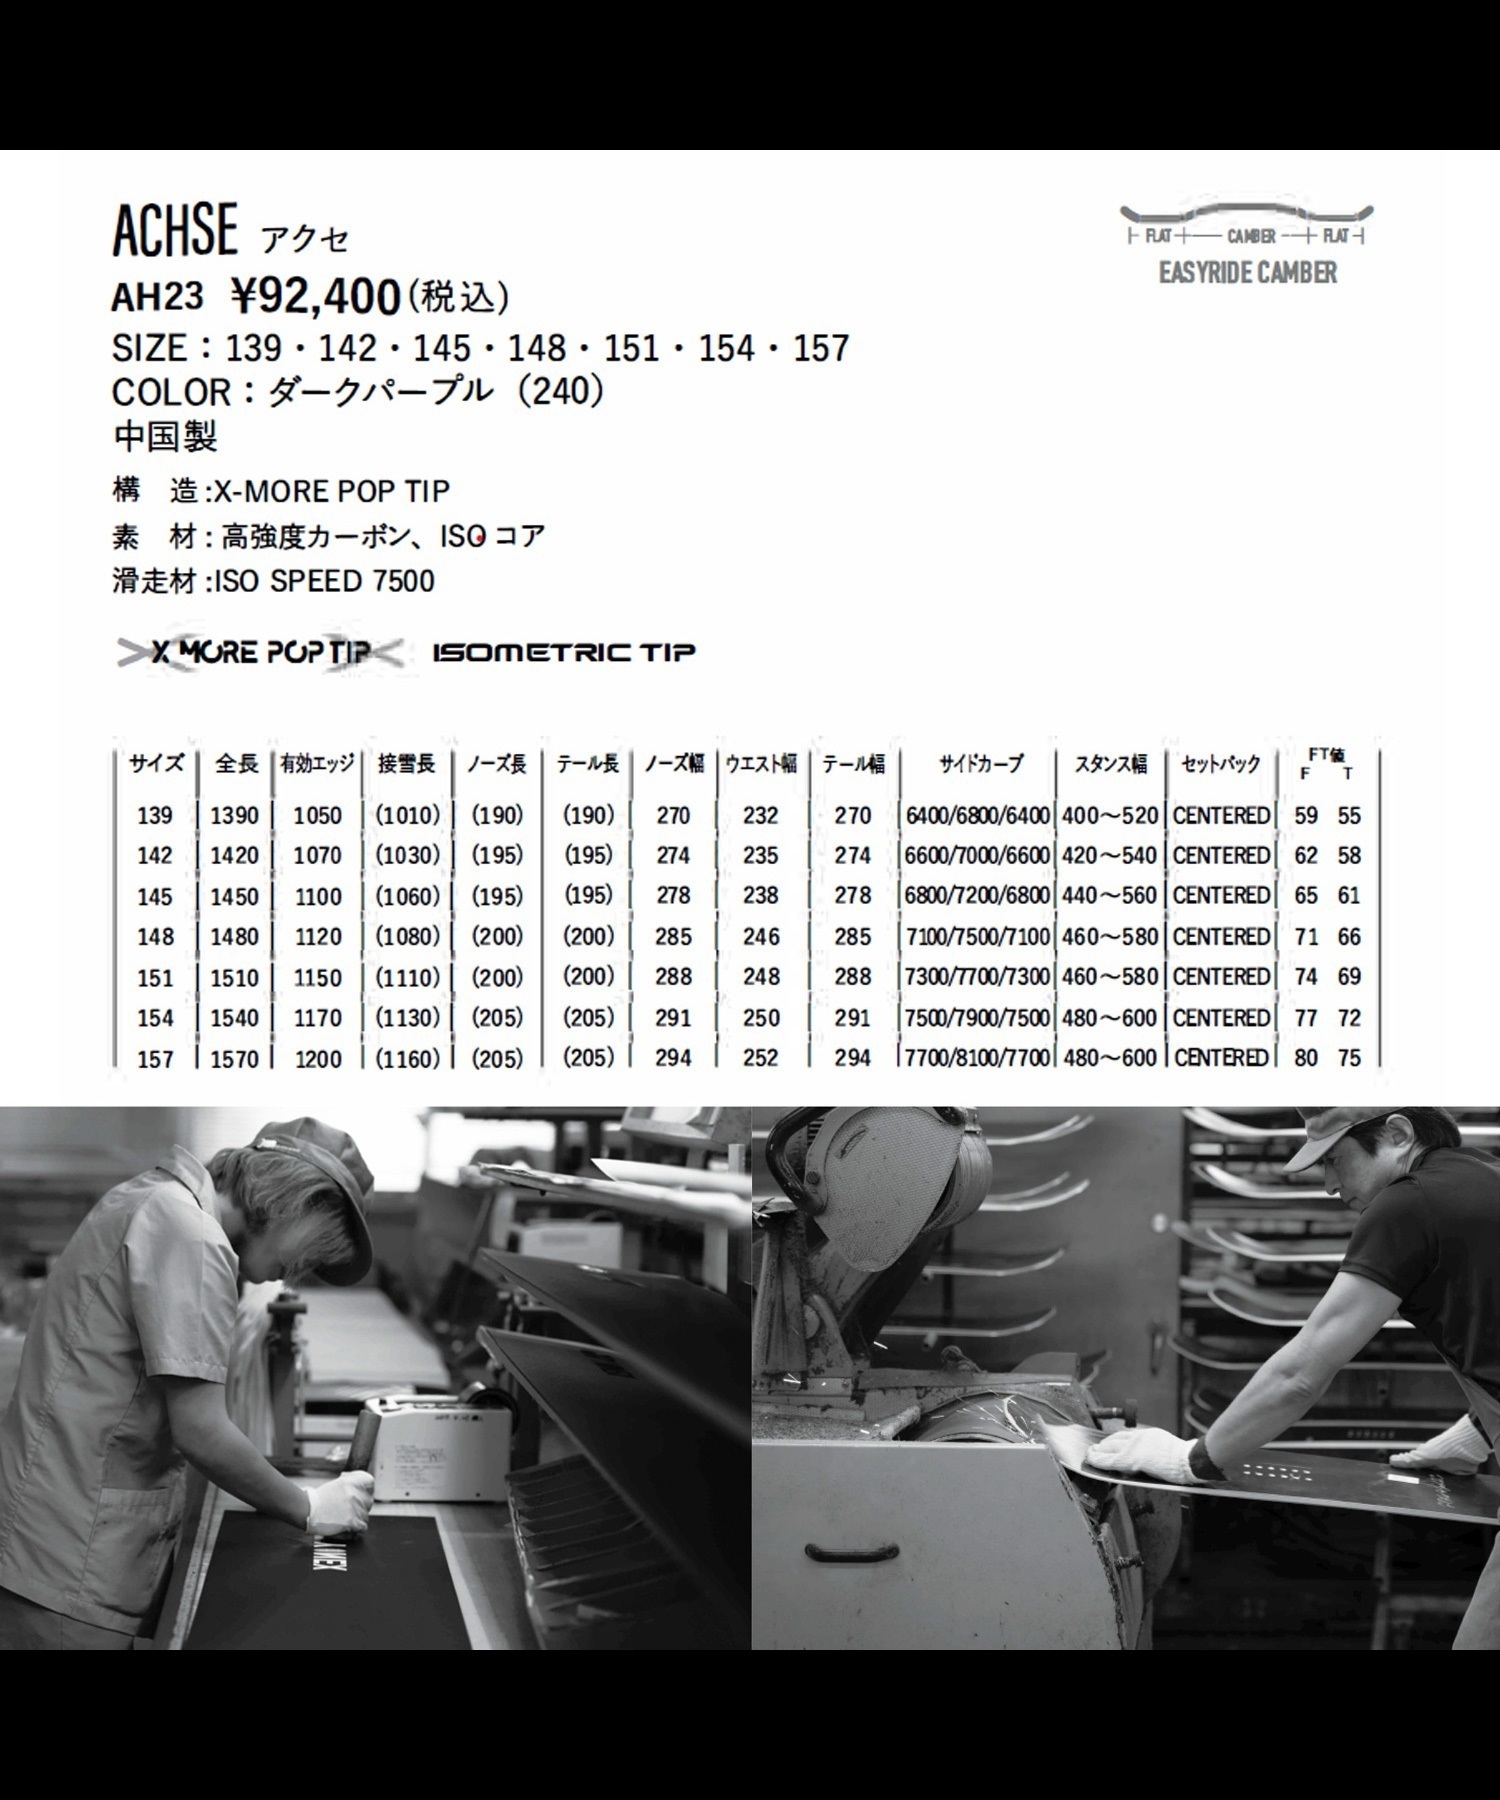 スノーボード 板 メンズ YONEX ヨネックス ACHSE 23-24モデル ムラサキスポーツ KK C10(DPU-148cm)